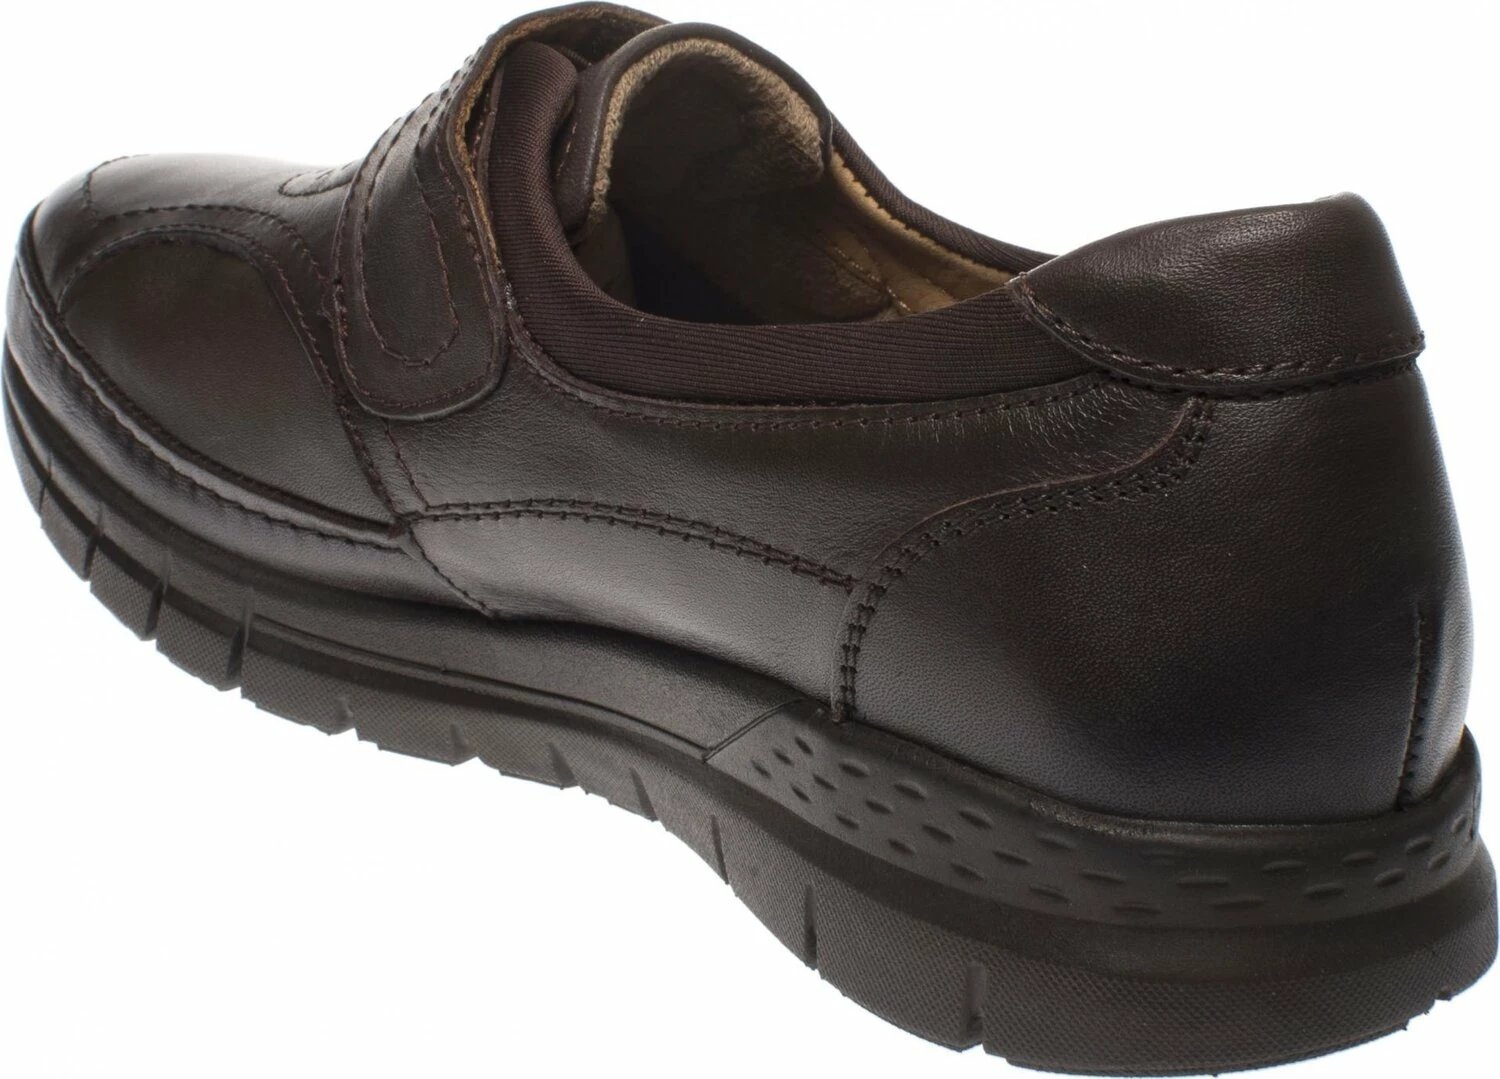 Këpucë komode Forelli për femra, ngjyrë kafe